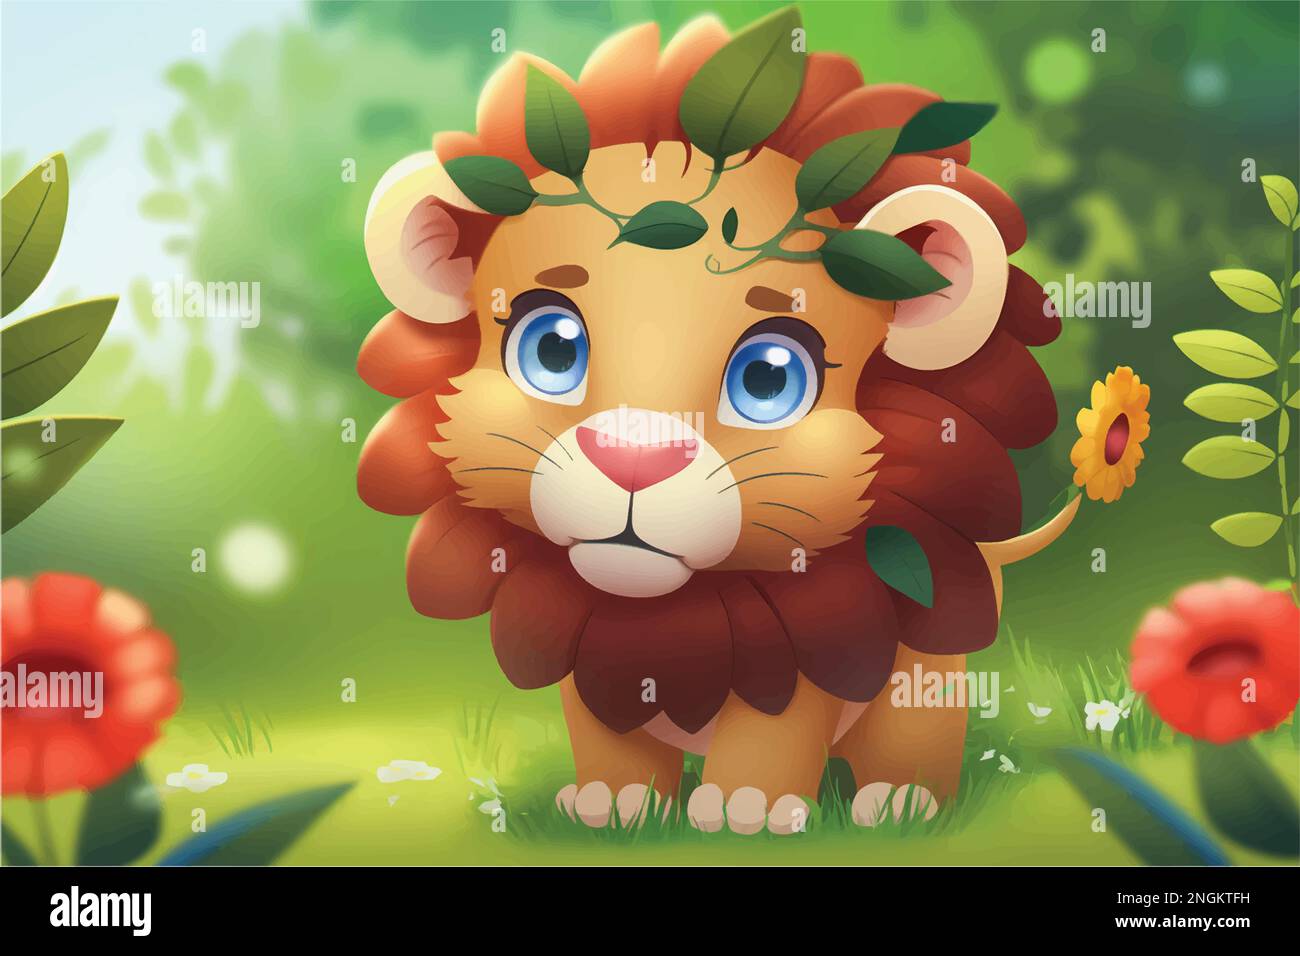 Questa giocosa illustrazione di un leone amichevole con una priorità bassa della natura è perfetta per i capretti. Lo stile affascinante e accessibile. Illustrazione Vettoriale